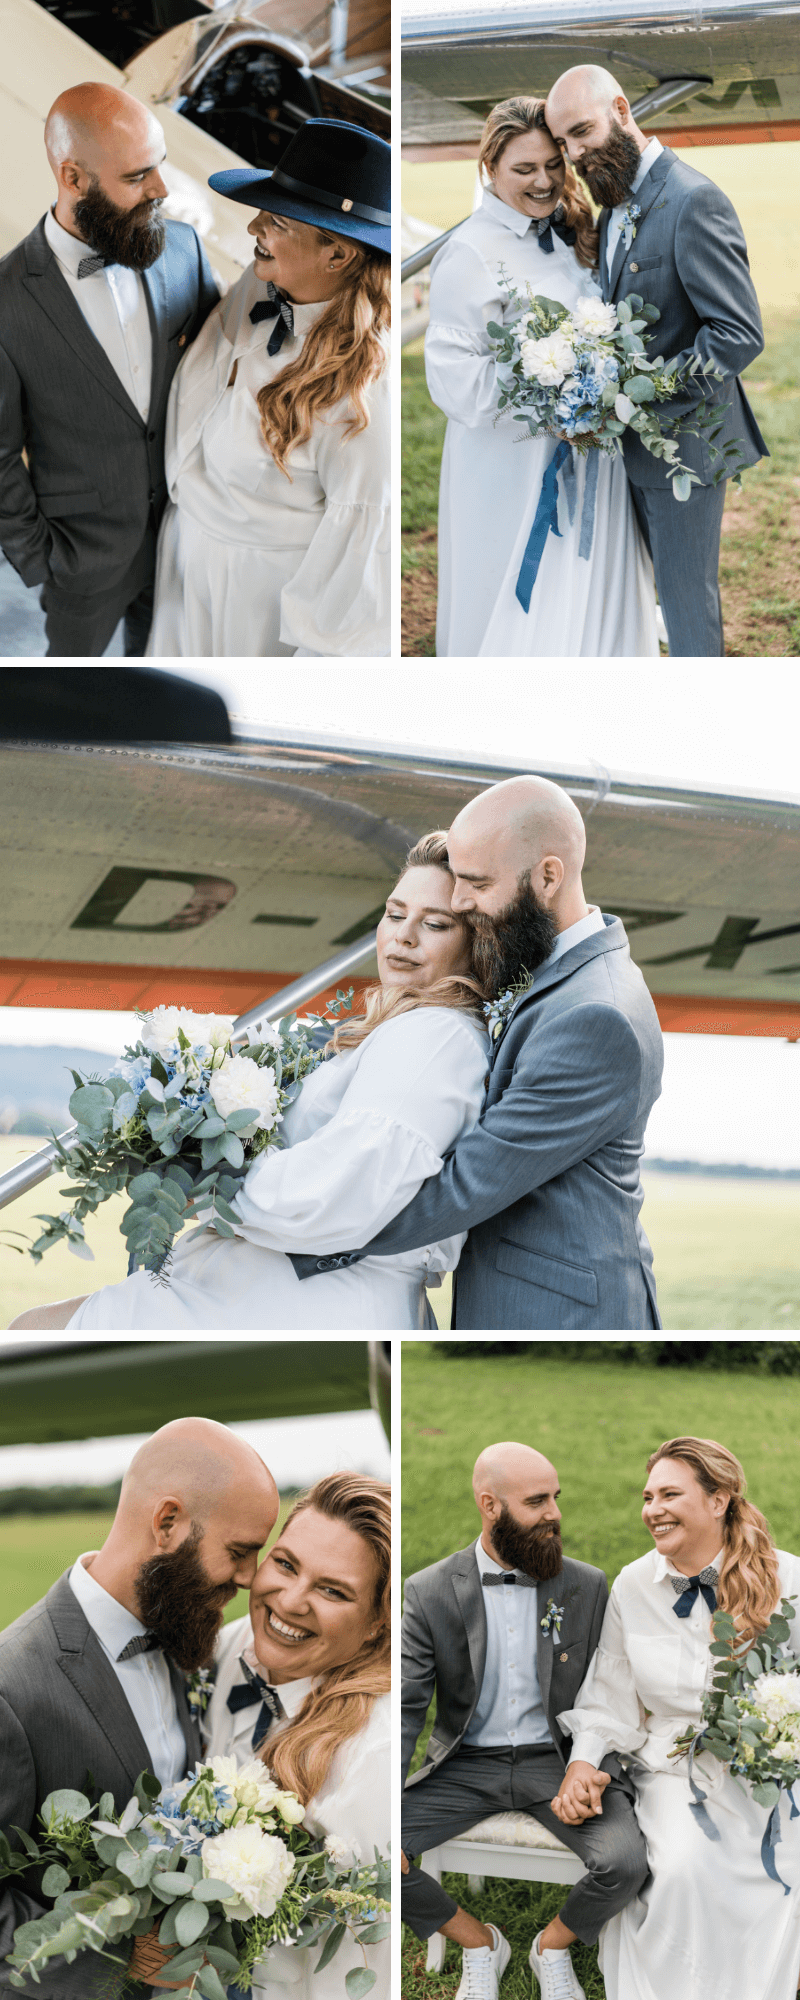 Hochzeit am Flugplatz, Hochzeit Flugzeuge, heiraten flugplatz, Hochzeitsmotto Fliegen